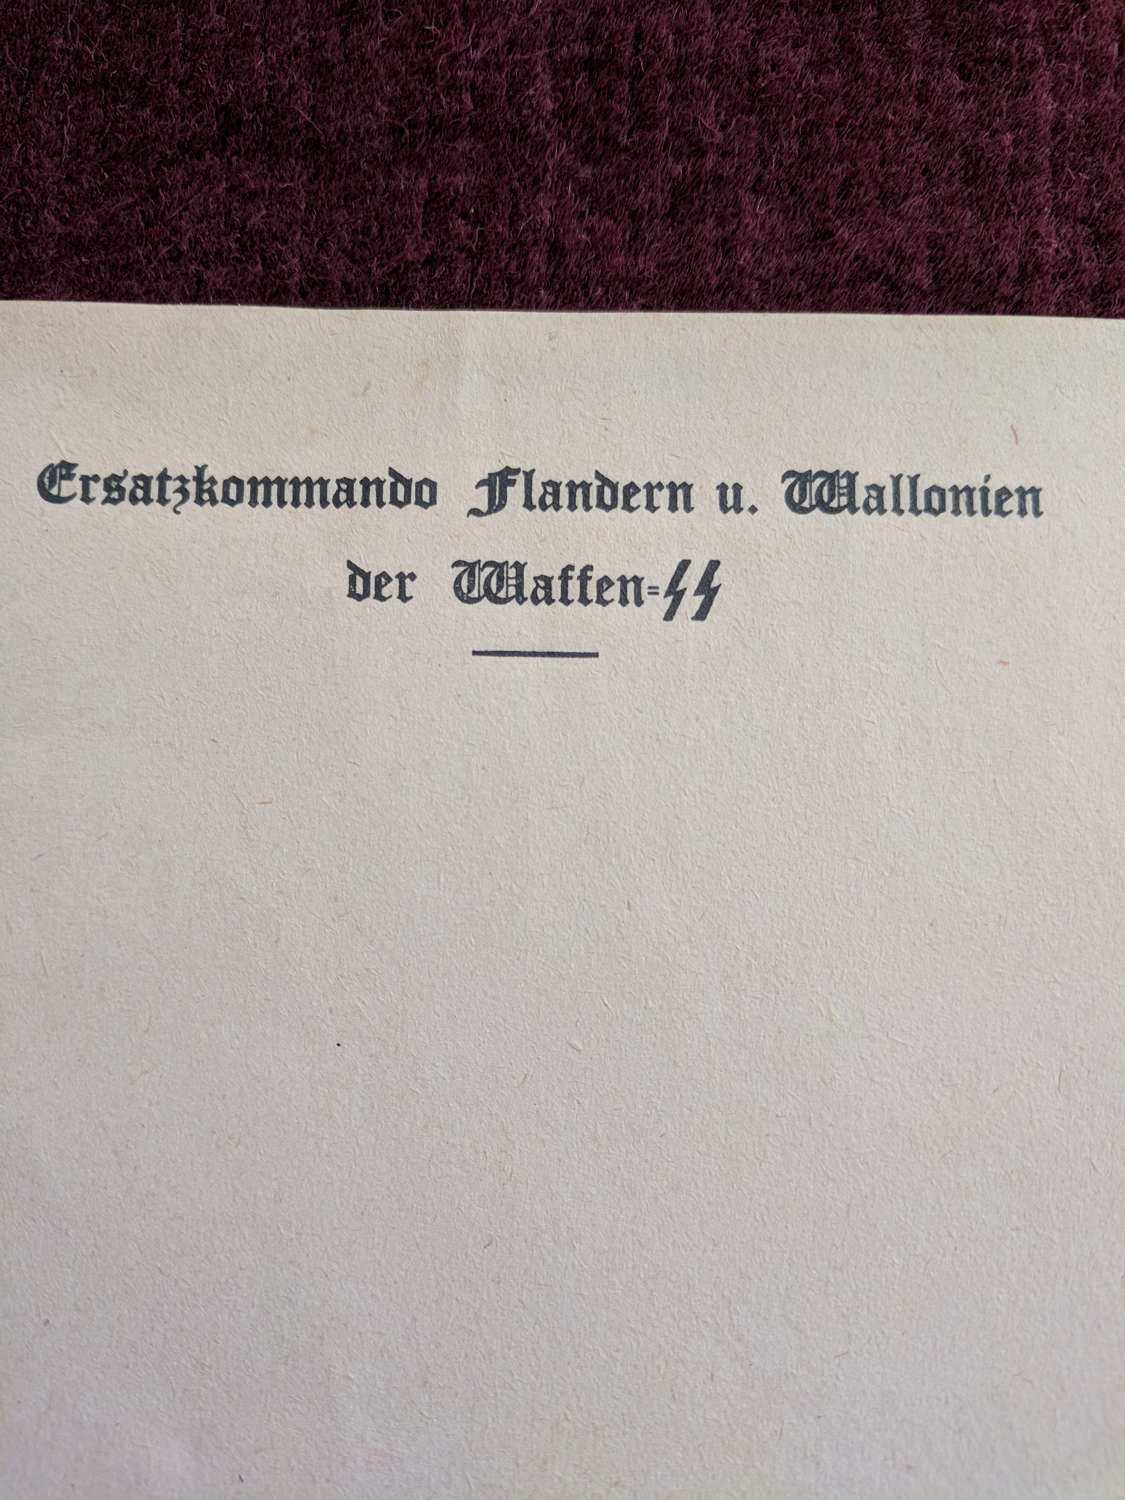 Ersatzkommado Flanderns u. Wallonien Der Waffen SS Headed Notepaper